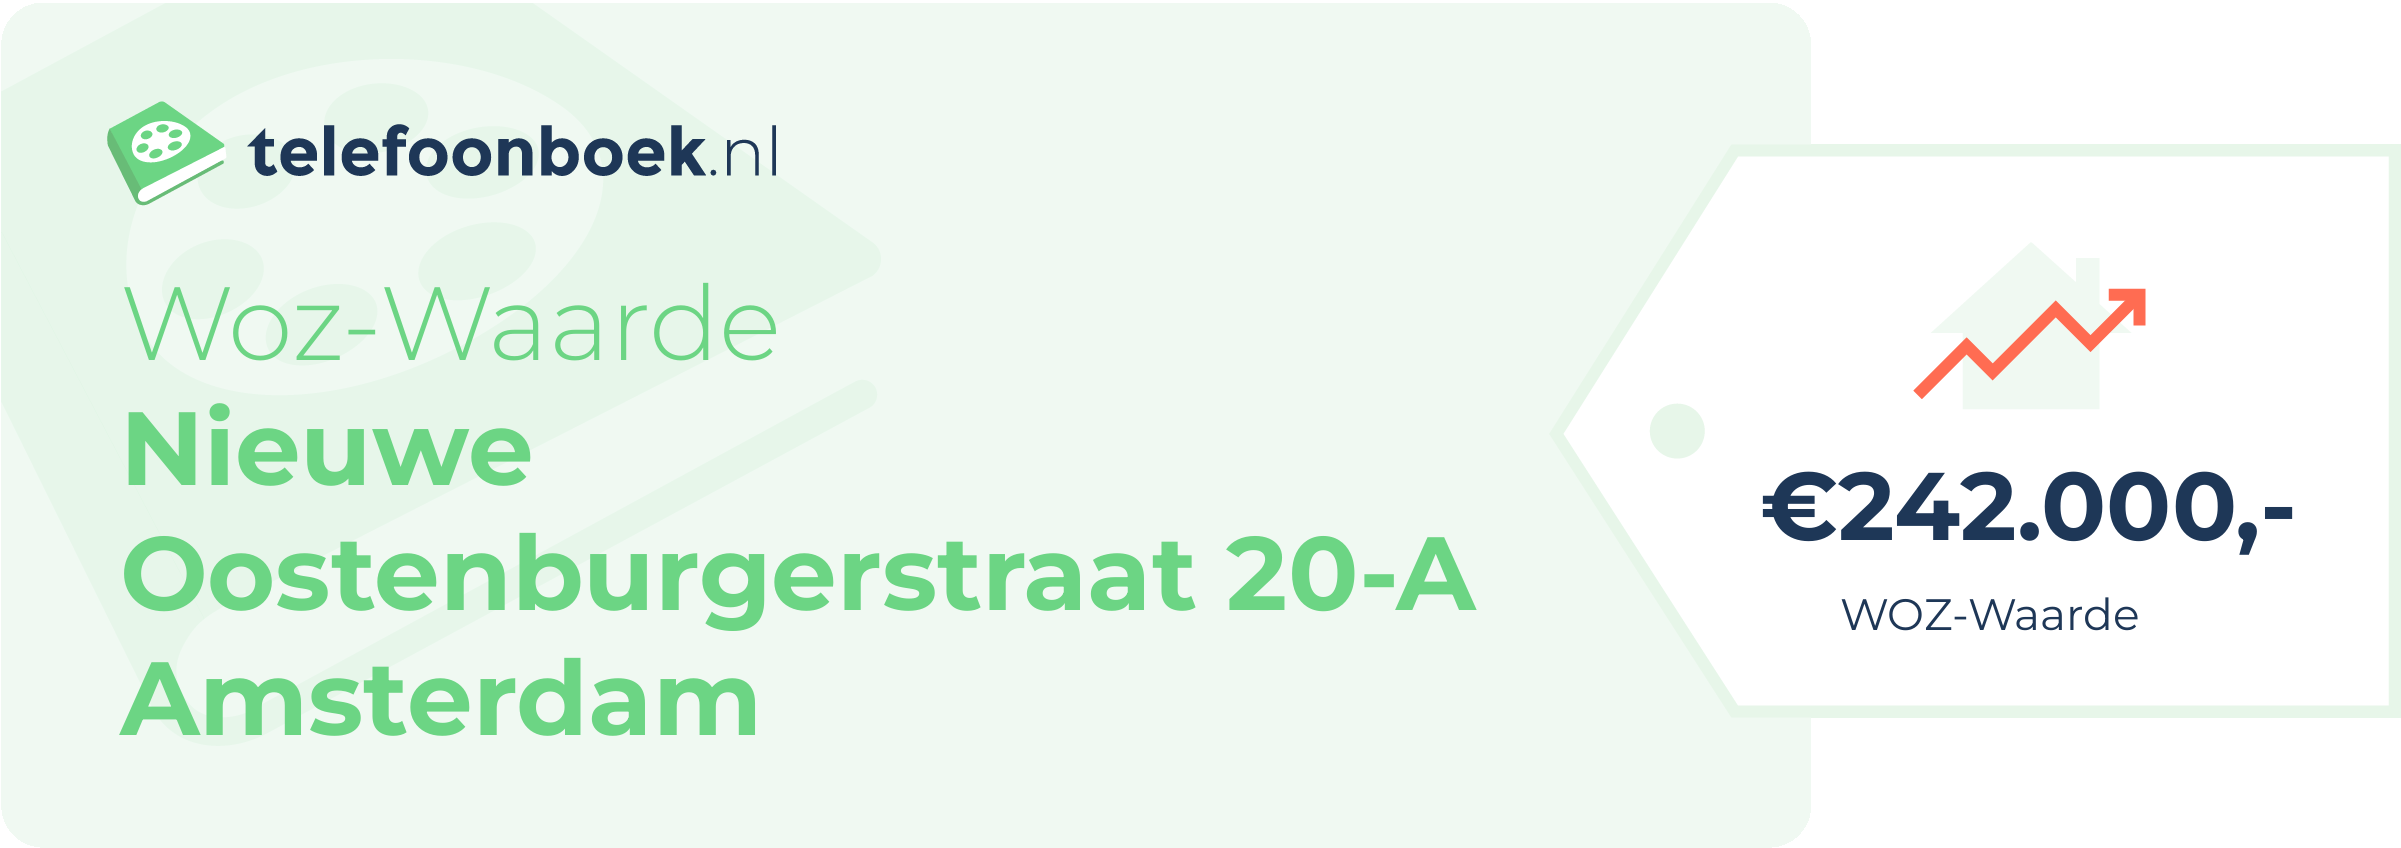 WOZ-waarde Nieuwe Oostenburgerstraat 20-A Amsterdam